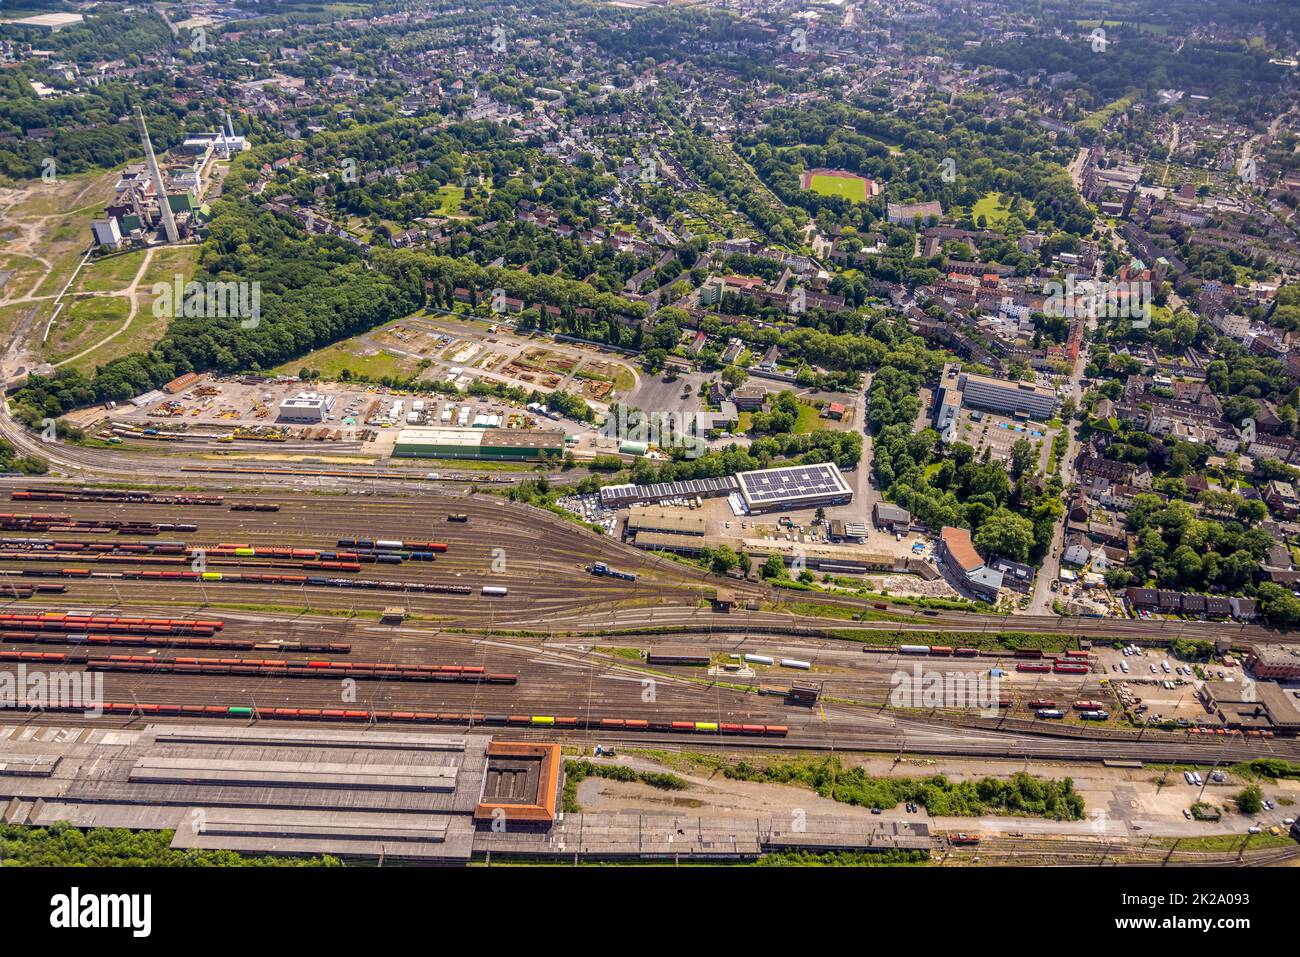 Luftbild, Baugebiet Heitkampsfeld, Wanne-Süd, Herne, Ruhrgebiet, Nordrhein-Westfalen, Deutschland Stock Photo